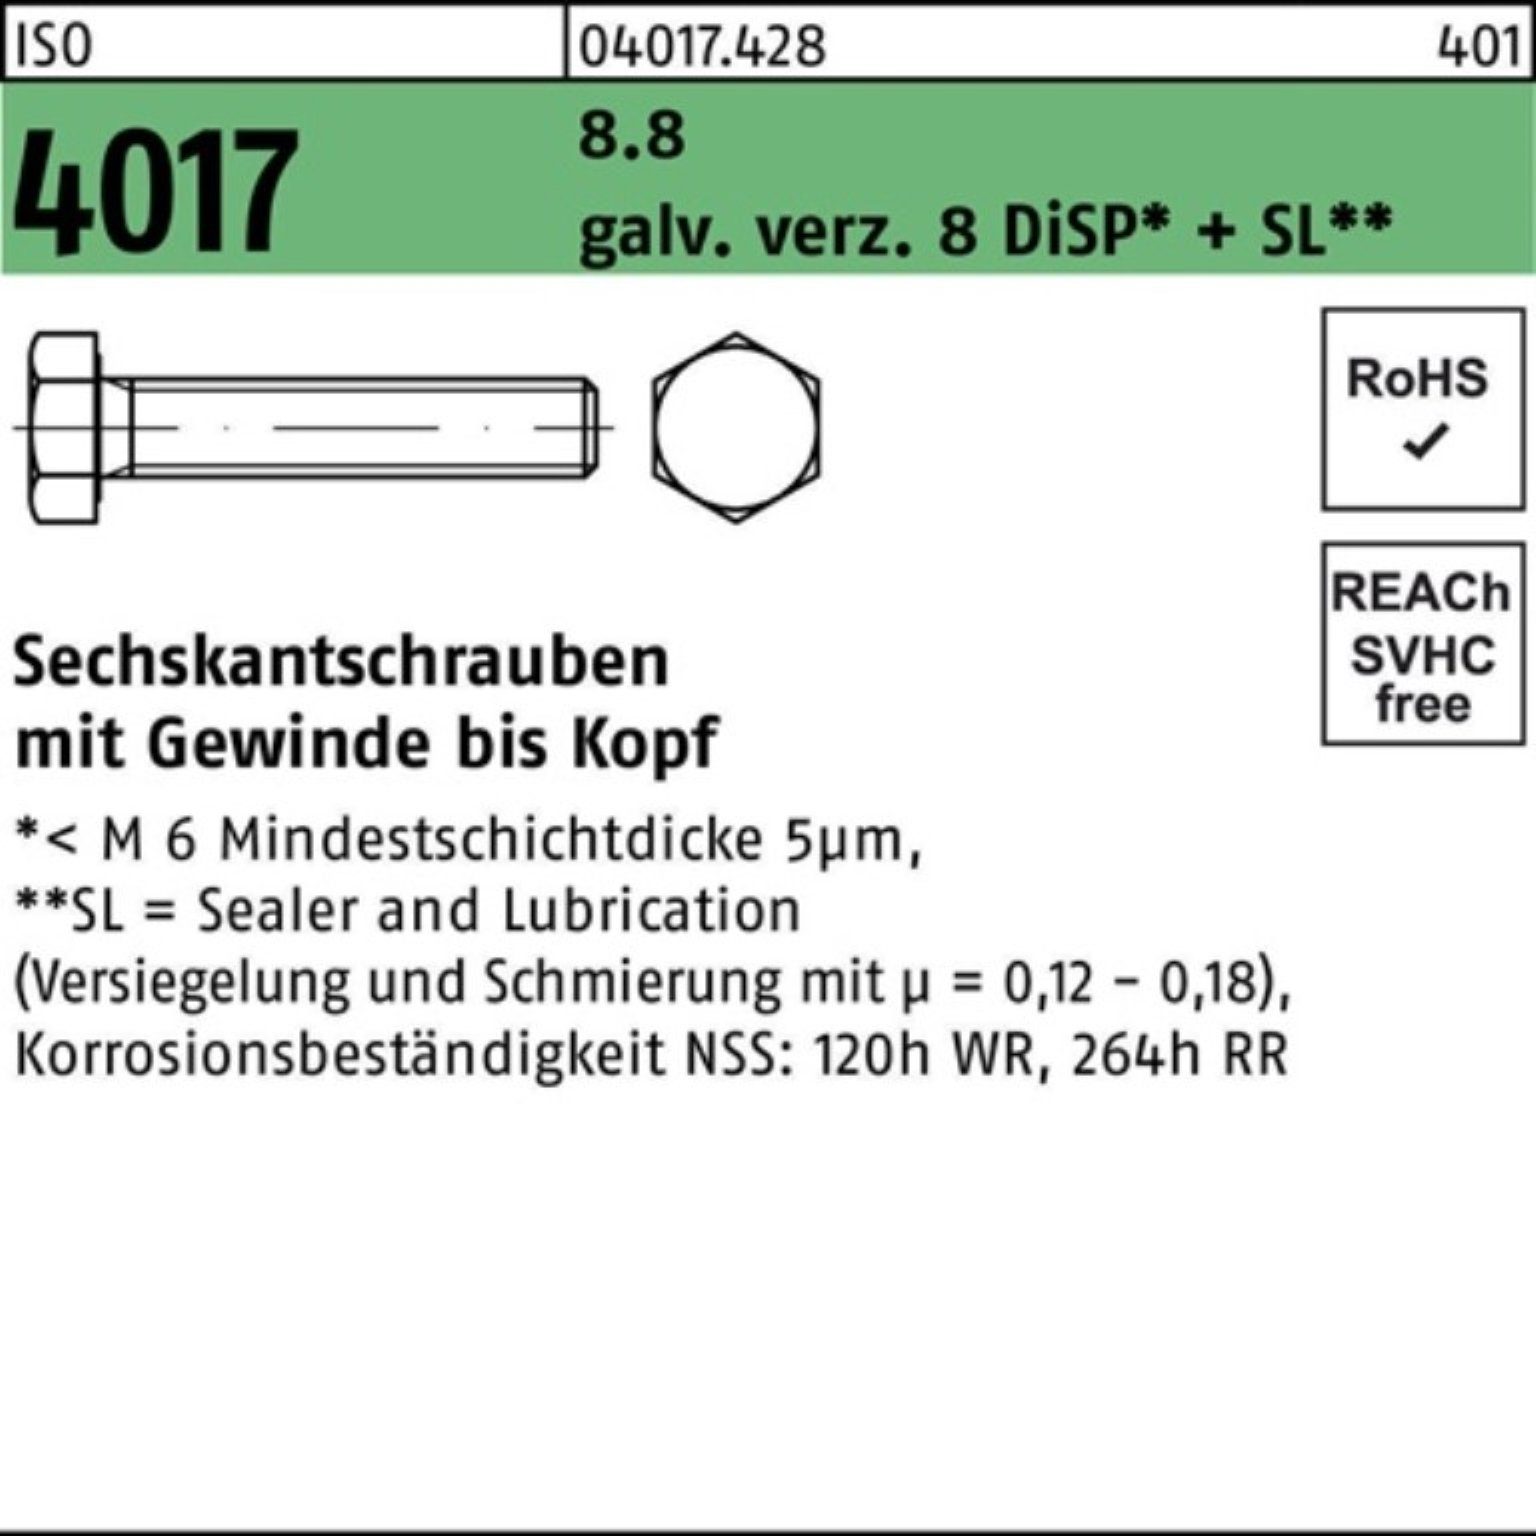 DiSP 8.8 75 ISO Sechskantschraube VG Sechskantschraube Bufab galv.verz. M16x 4017 8 100er Pack